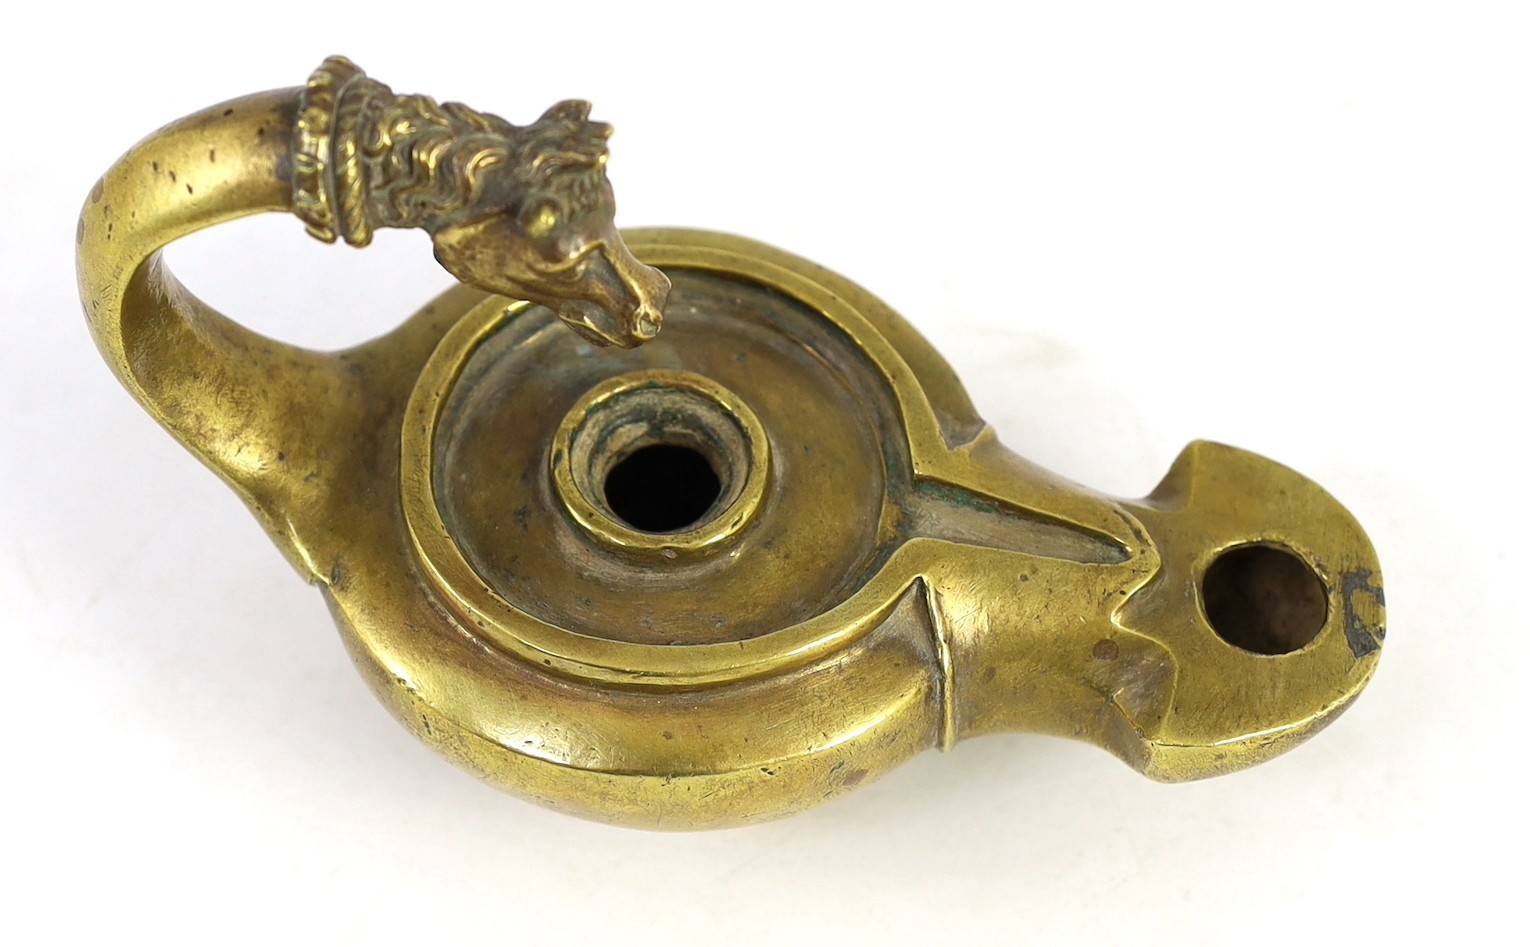 A Renaissance or Roman bronze oil lamp, 17.5cm long